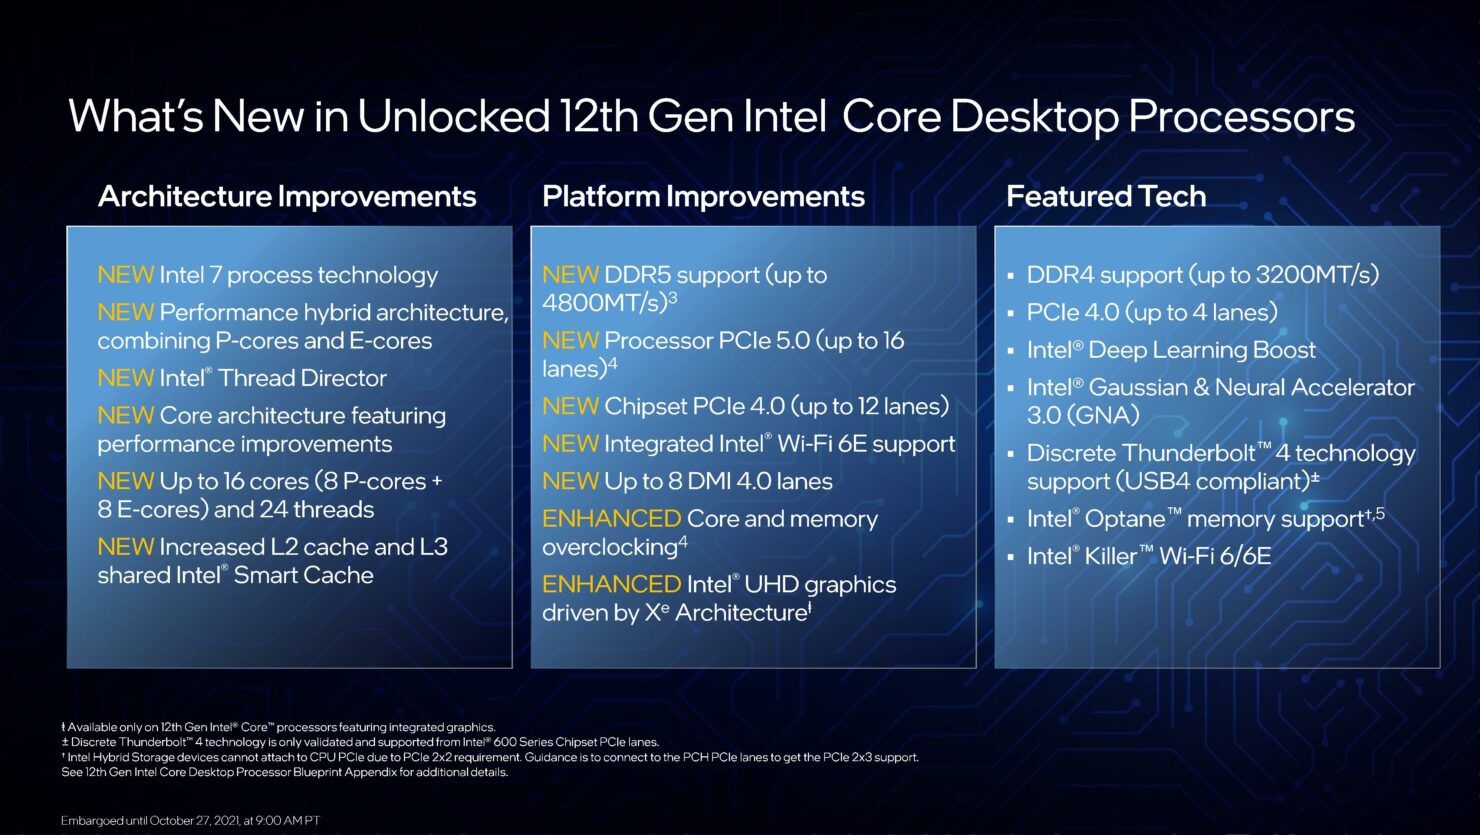 เปิดตัวซีพียู Intel Gen 12 Alder Lake-S บน Desktop PC สถาปัตยกรรมไฮบริด แรงขึ้นกว่าเดิมหลายเท่า เริ่มต้น 10,690 บาท